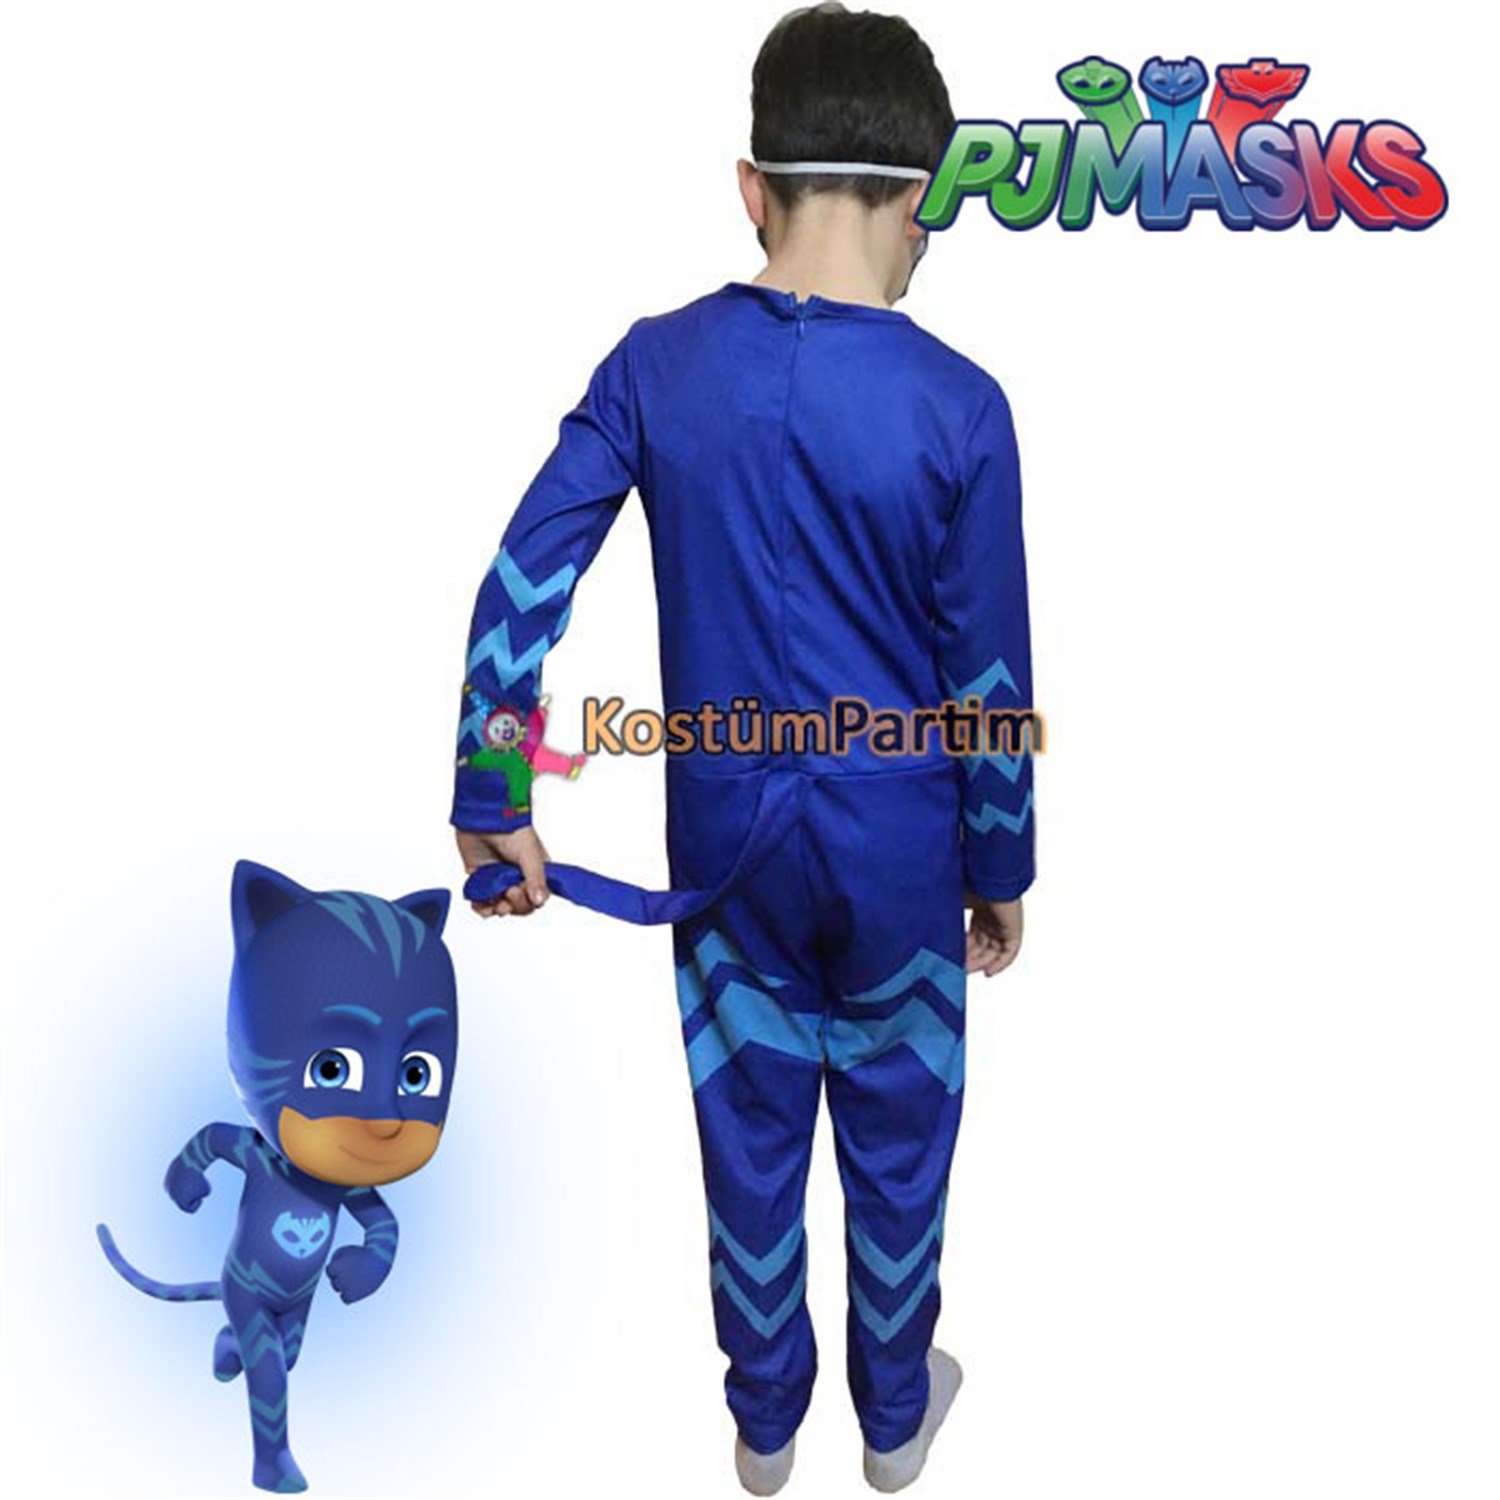 Pijamaskeliler Kedi Çocuk Kostümü, PJMask Catboy Kıyafeti - KostümPartim®